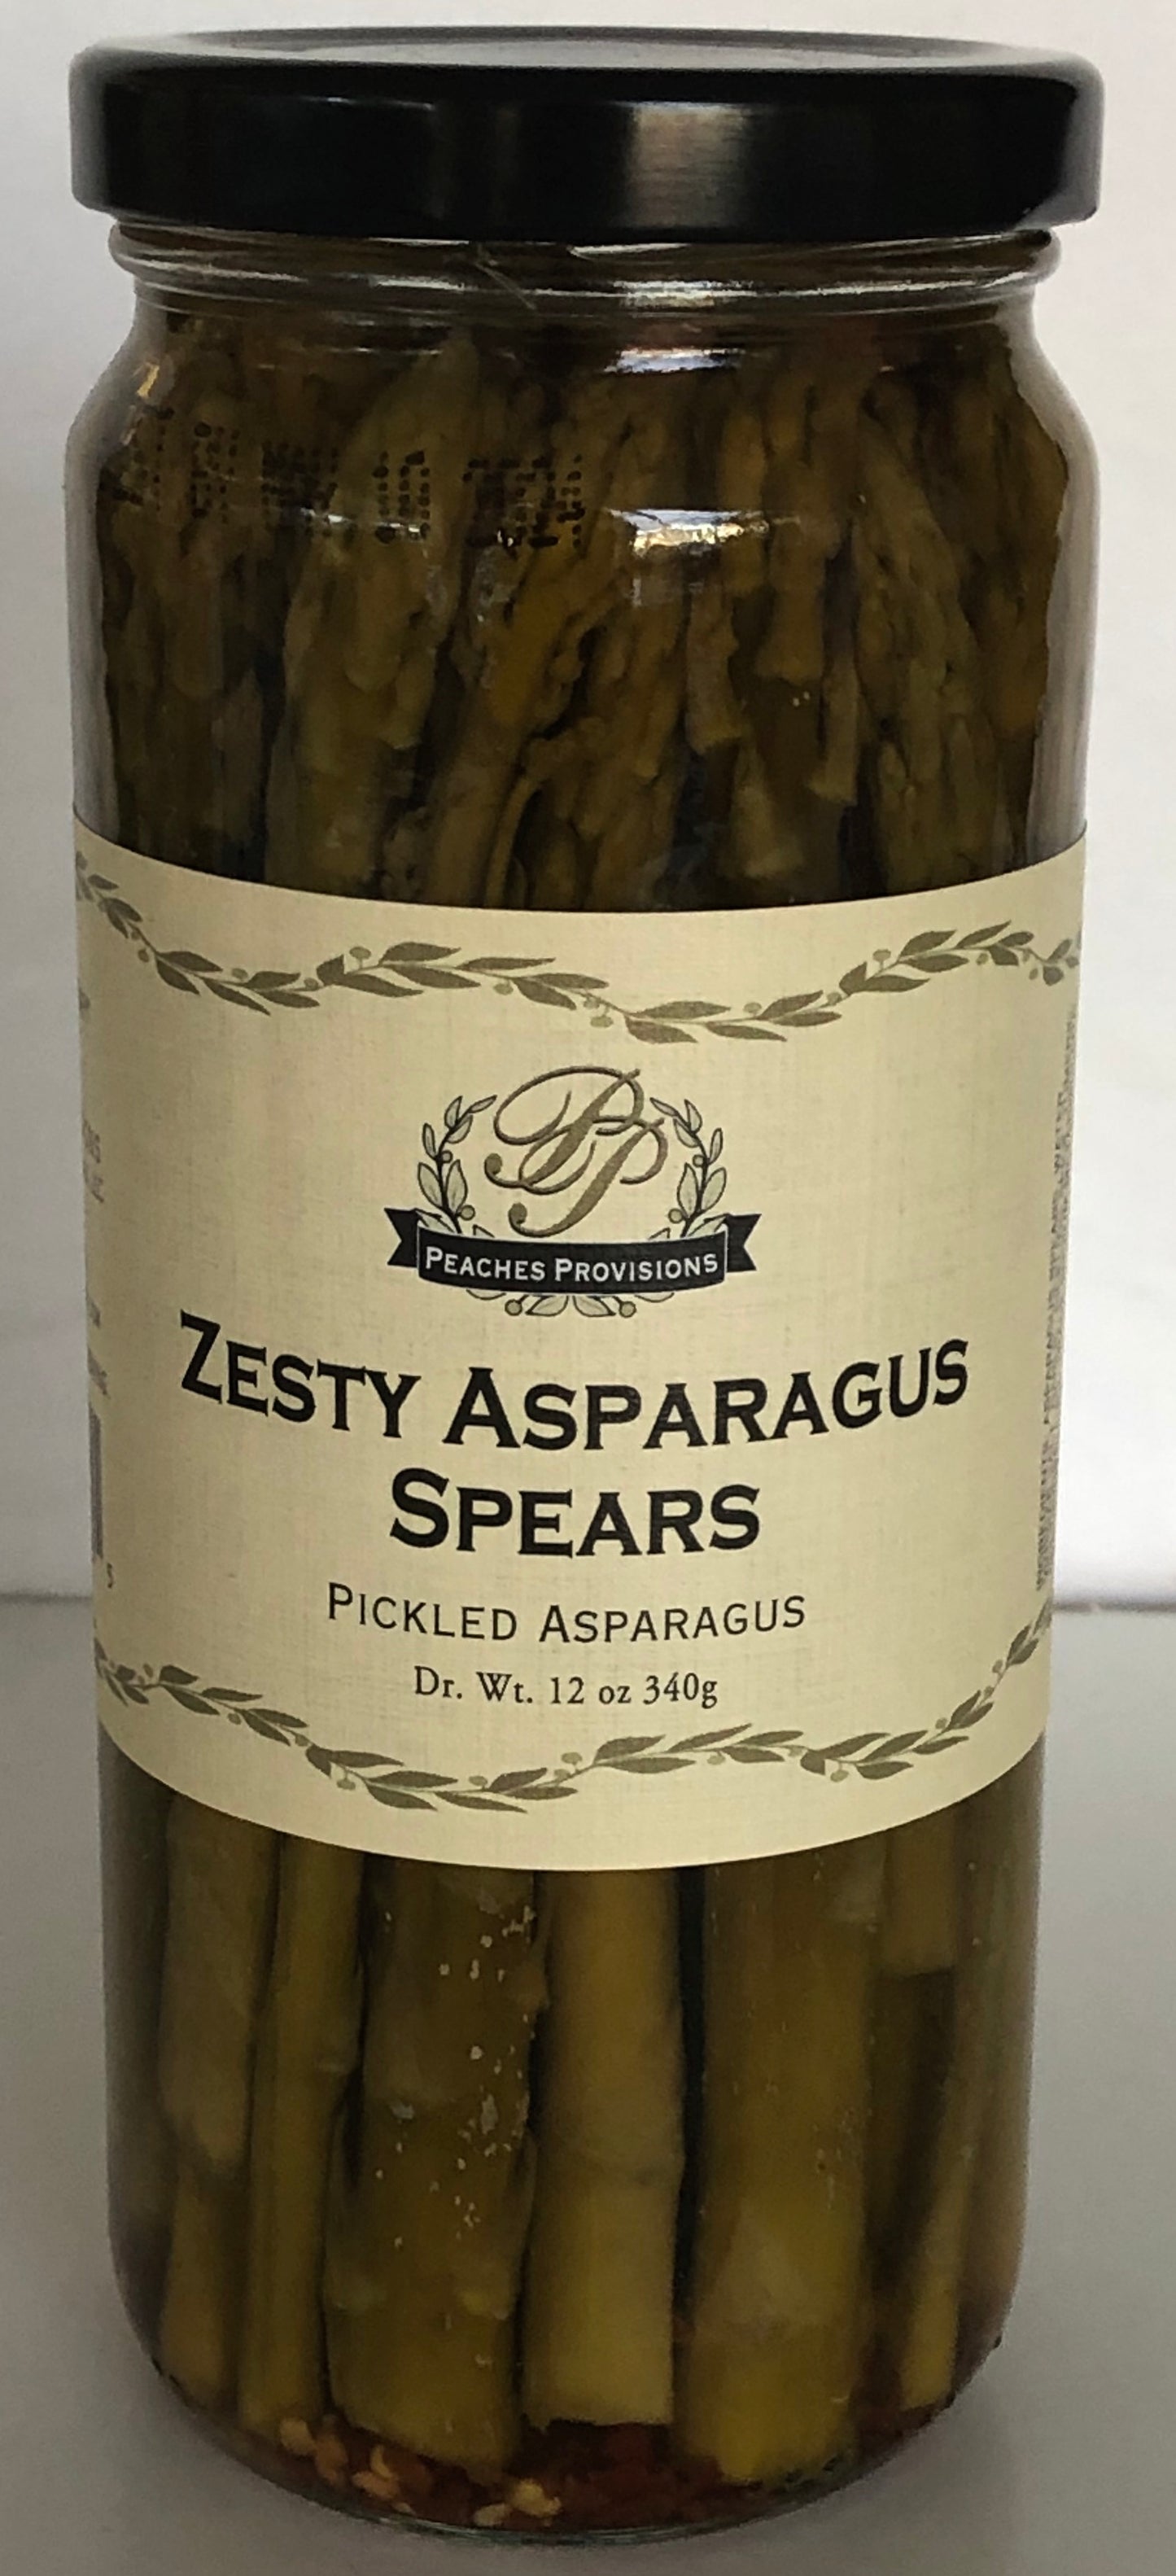 Asparagus Spears, Mild or Zesty